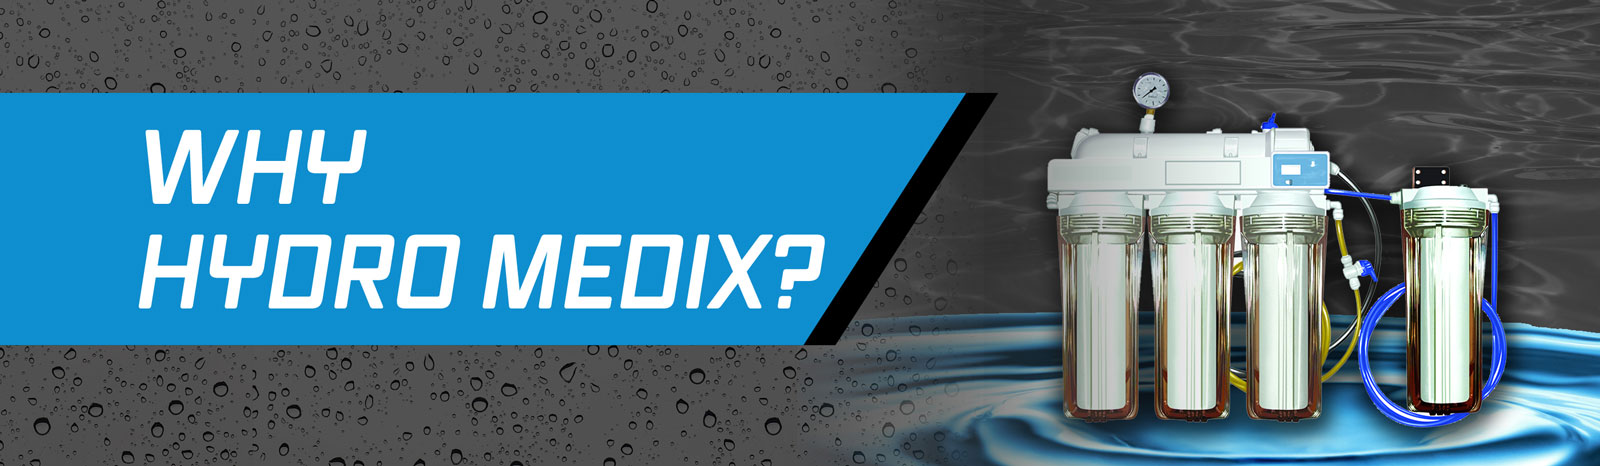 Why Hydro Medix